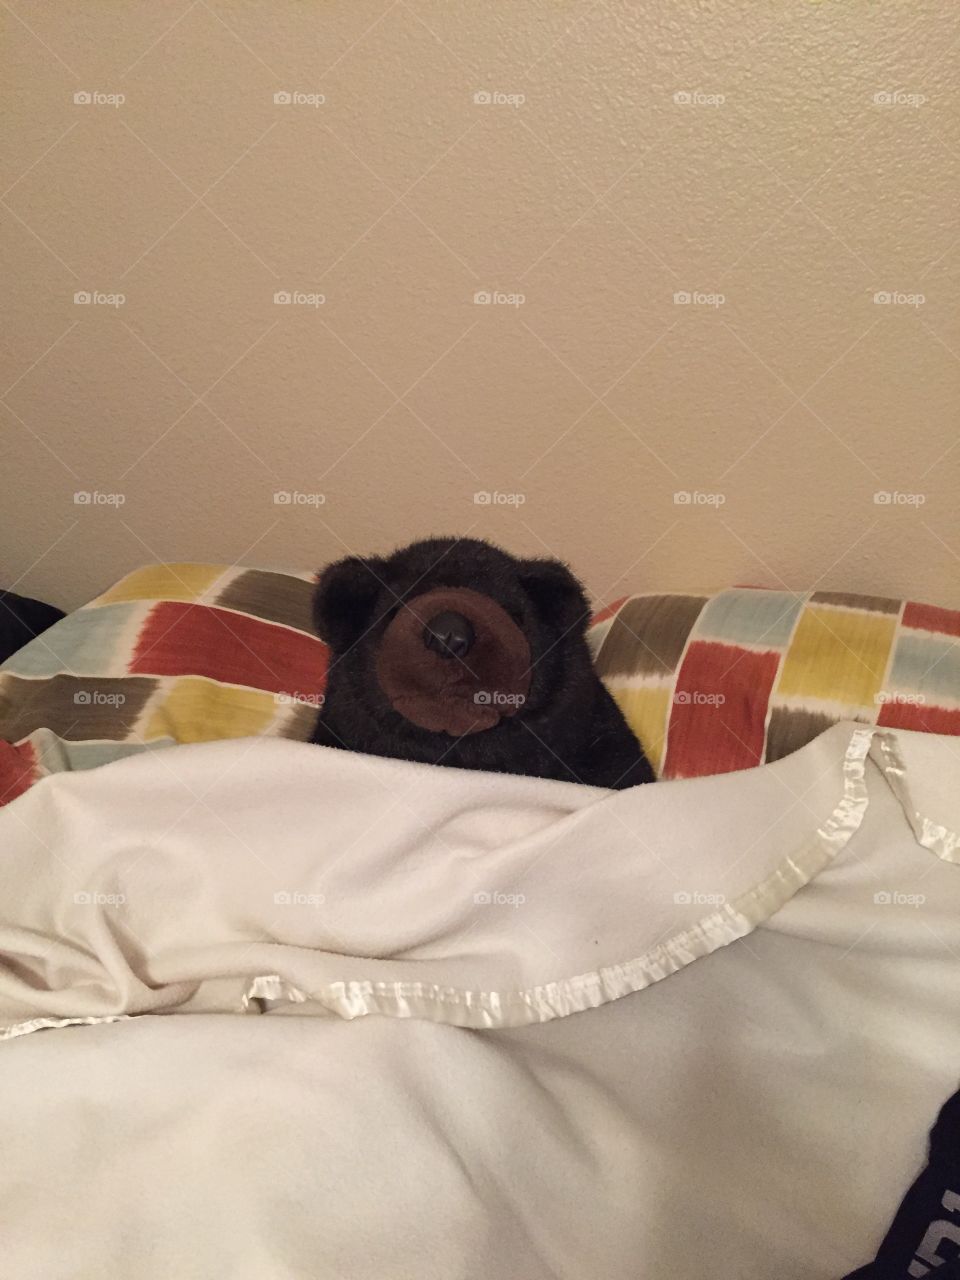 Mr. Bear in bed